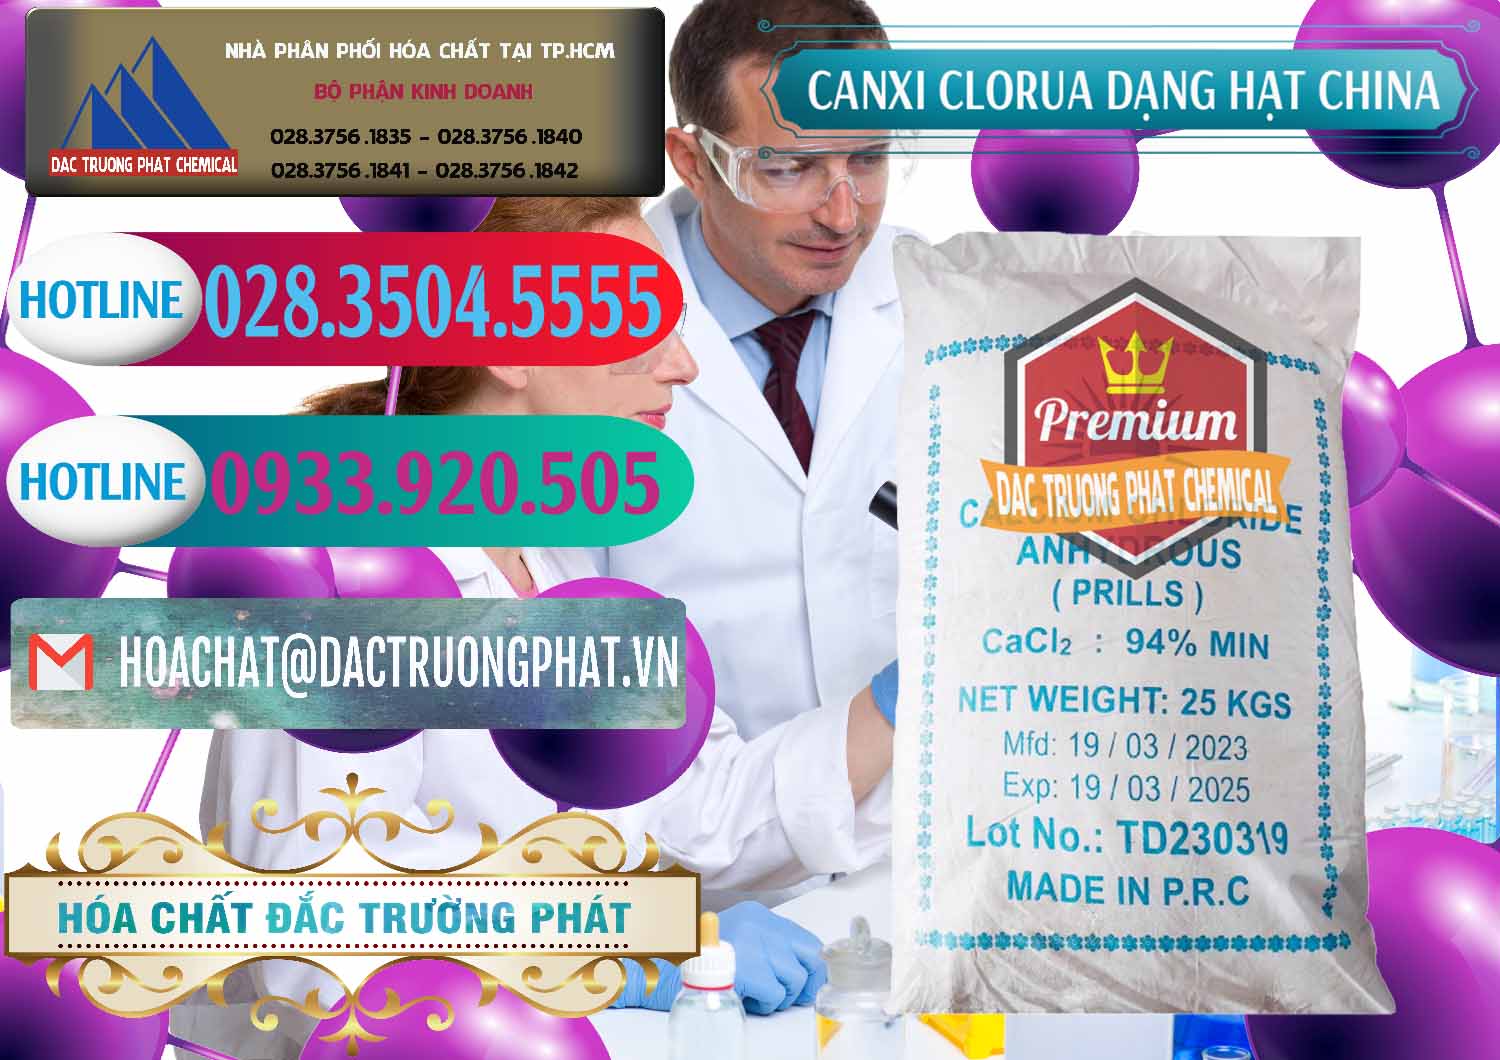 Công ty nhập khẩu & bán CaCl2 – Canxi Clorua 94% Dạng Hạt Trung Quốc China - 0373 - Cung cấp _ nhập khẩu hóa chất tại TP.HCM - truongphat.vn